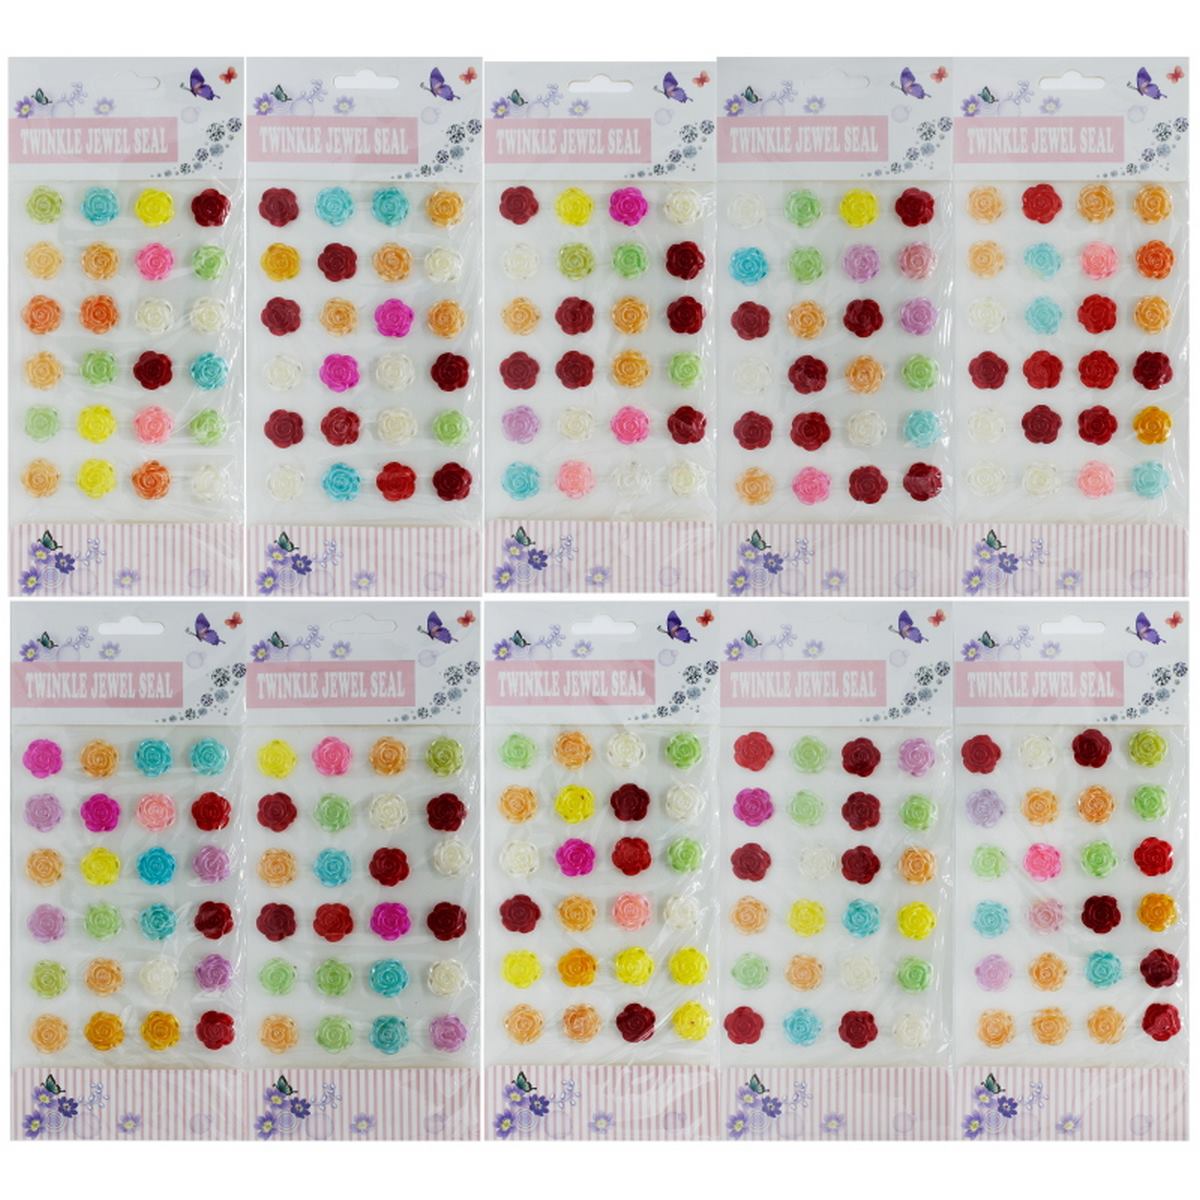 jags-mumbai scrapbook Stickers Big Twinkle Jewel Seat Rose Sticker (Multi Colour)